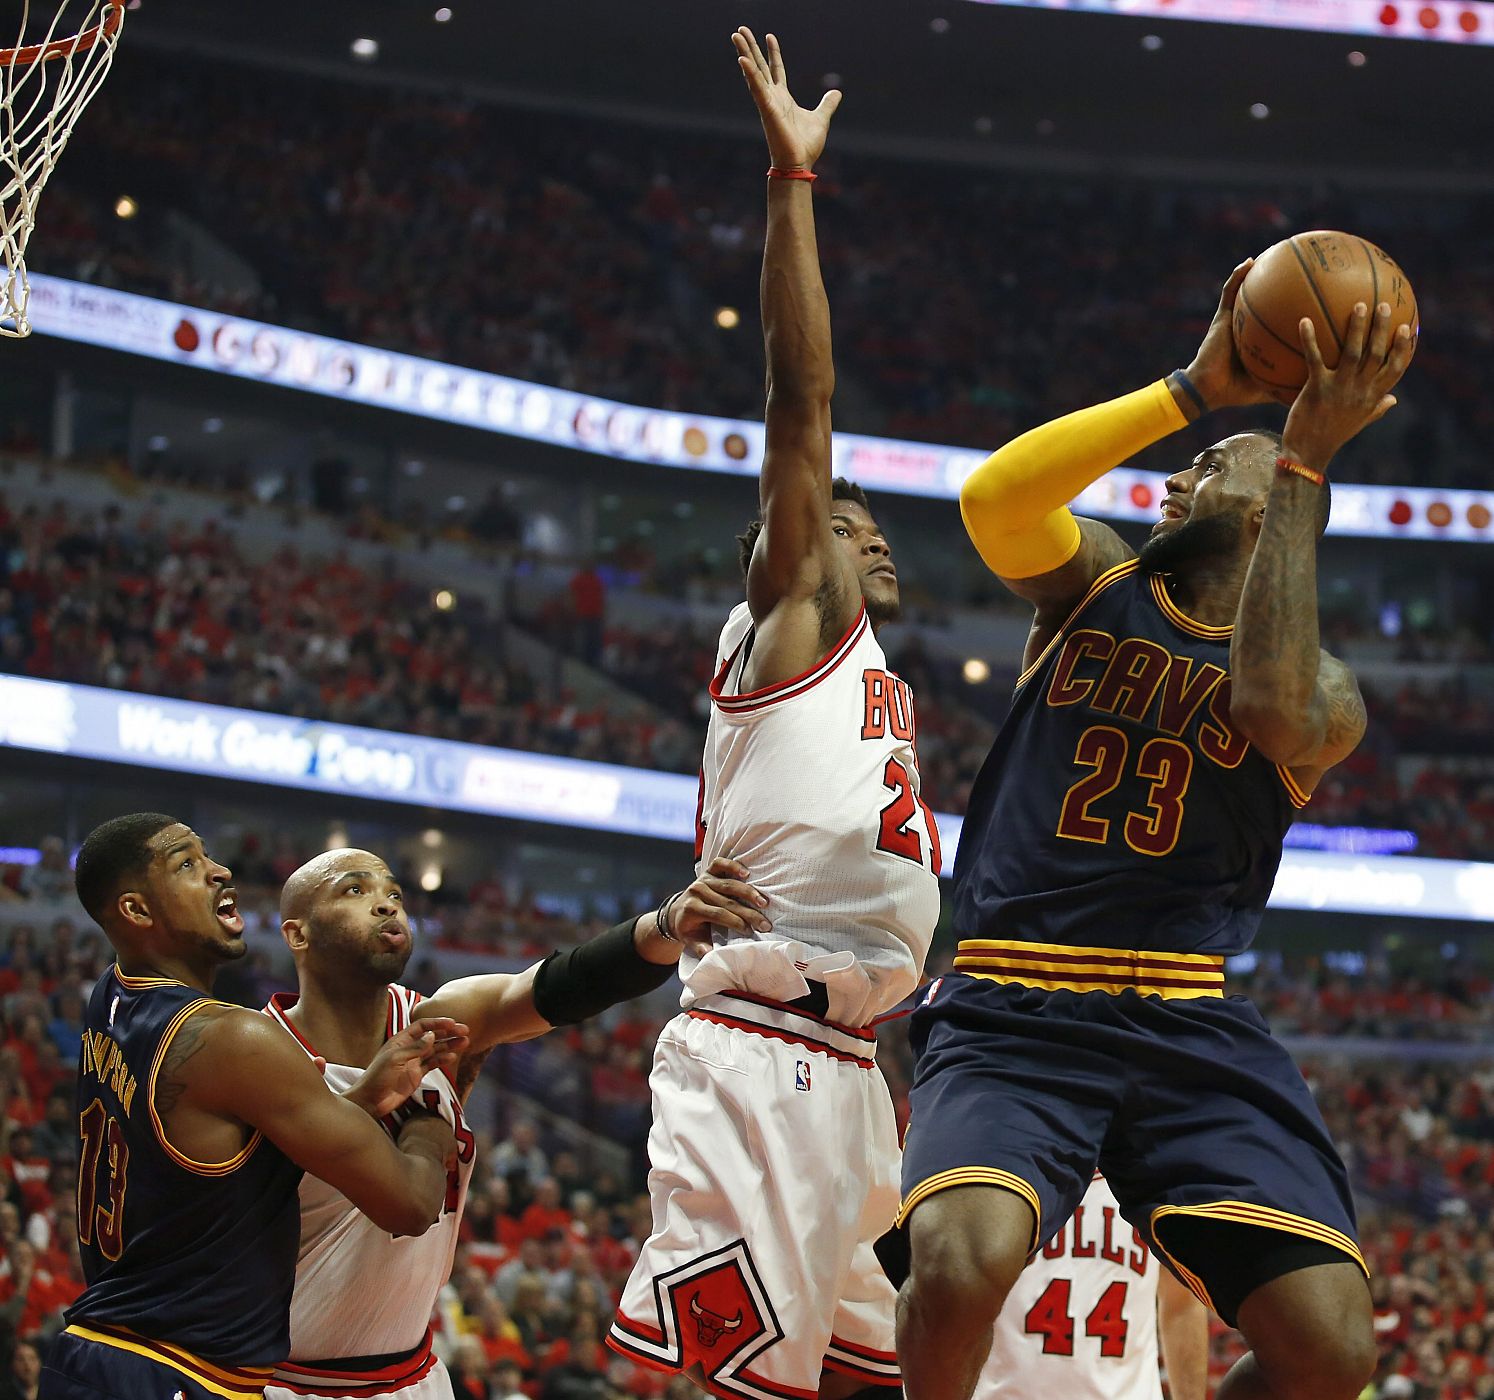 El alero de los Cleveland Cavaliers, LeBron James, alza un tiro frente al base de Chicago Bulls Jimmy Butler.